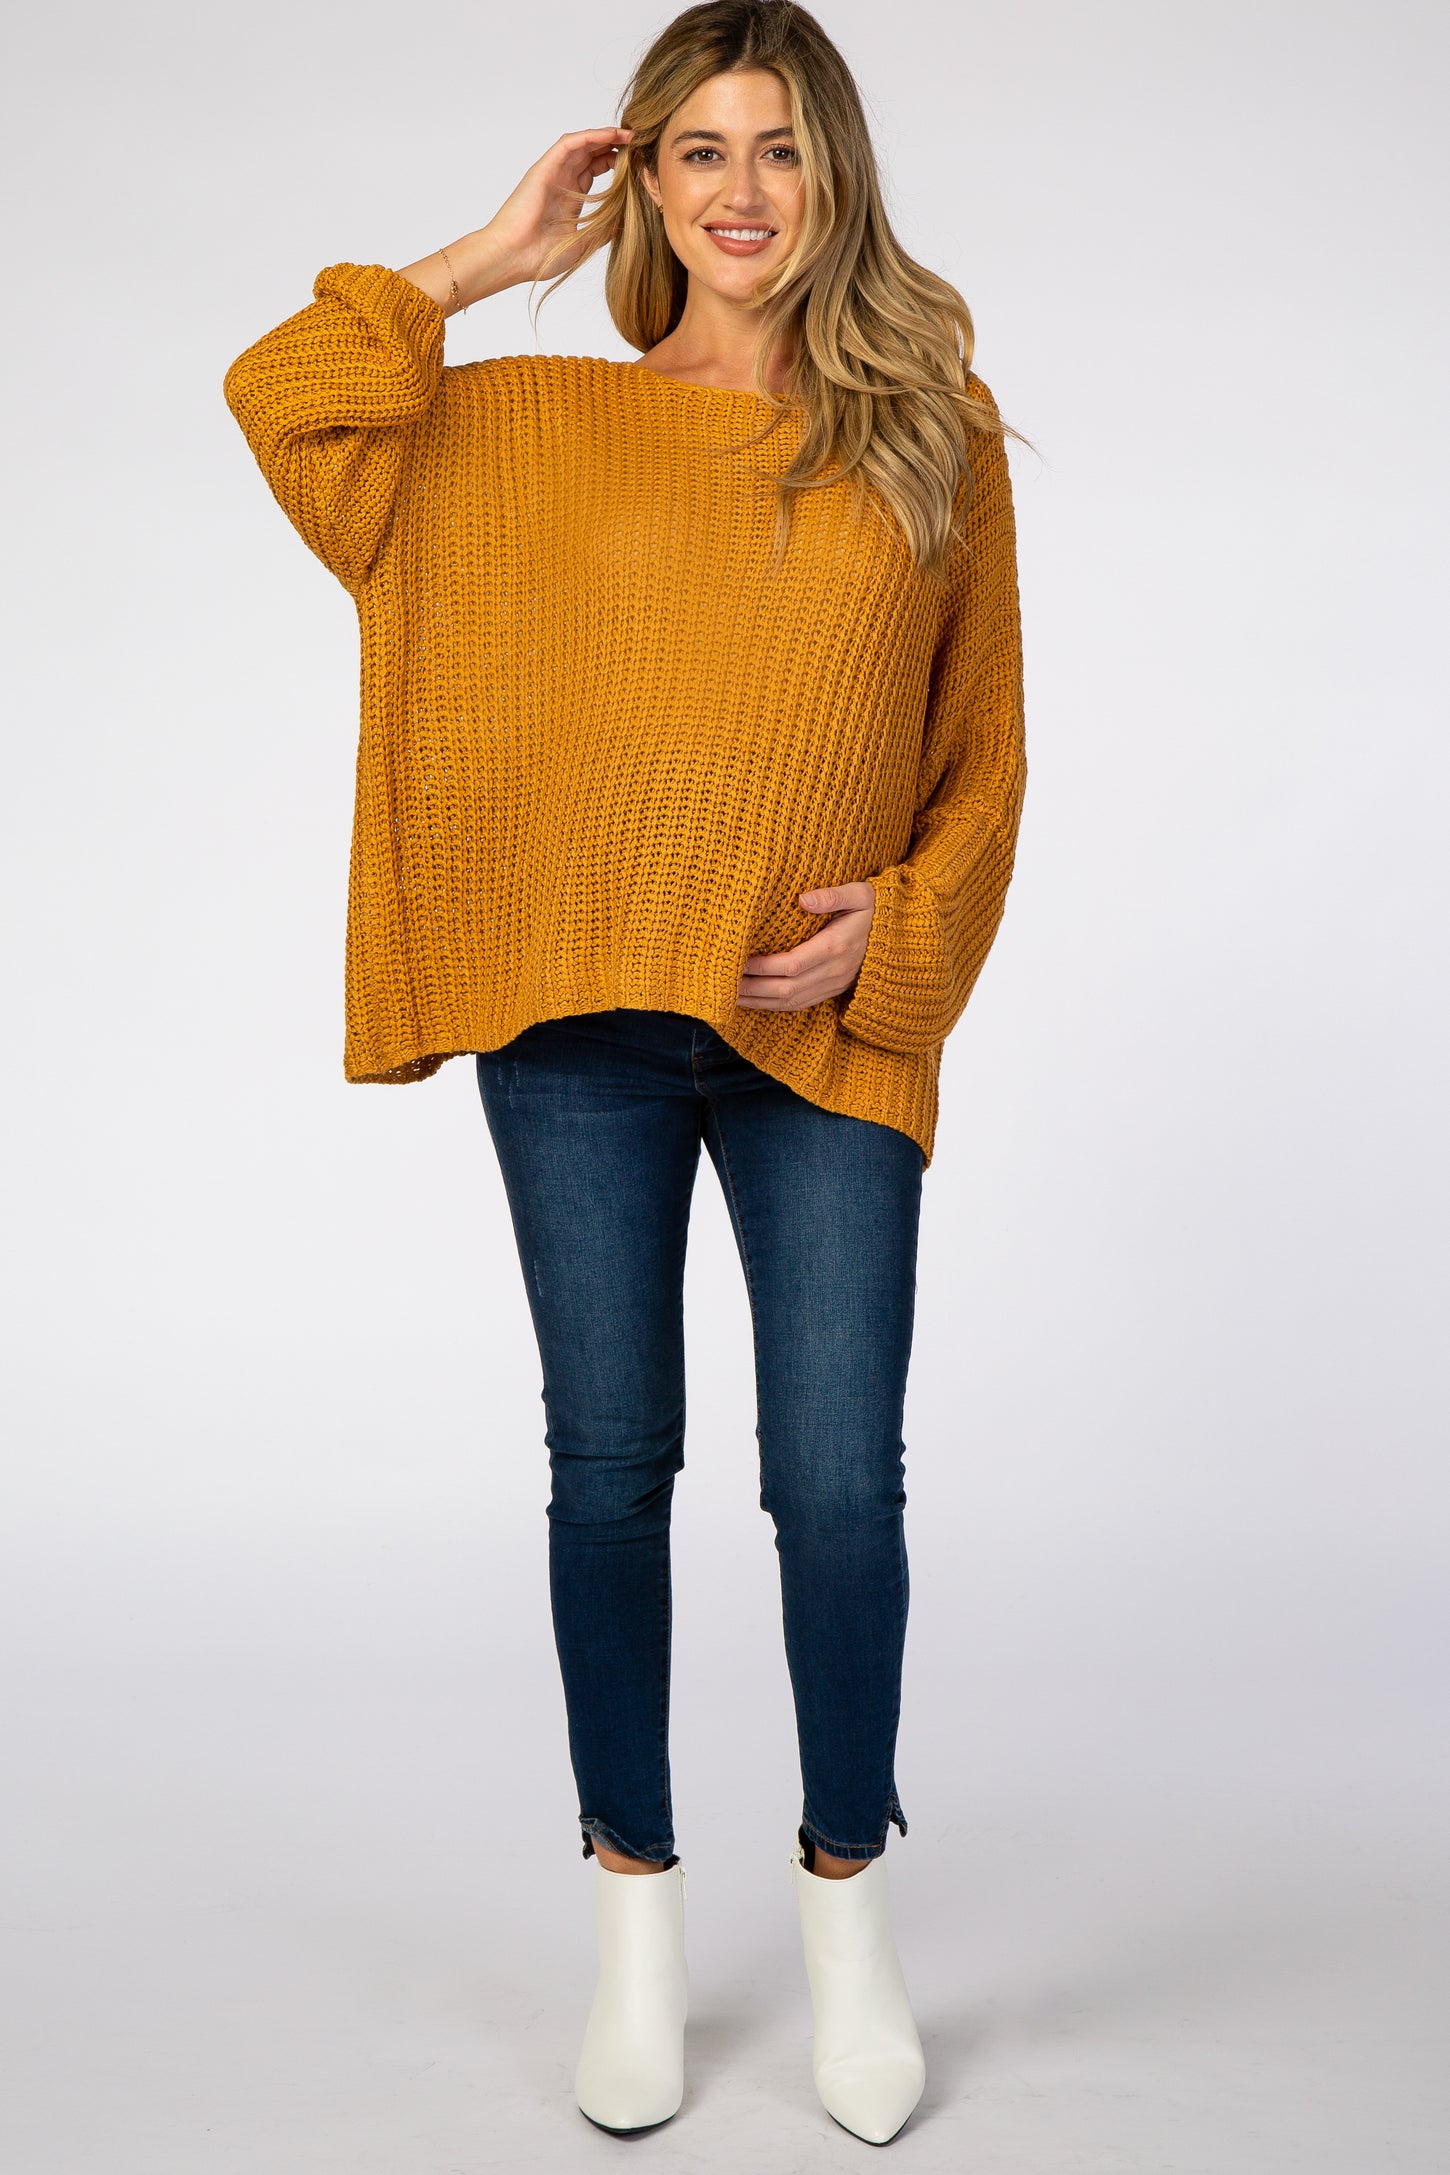 Yellow Chunky Knit Boat Neck Maternity Sweater– PinkBlush